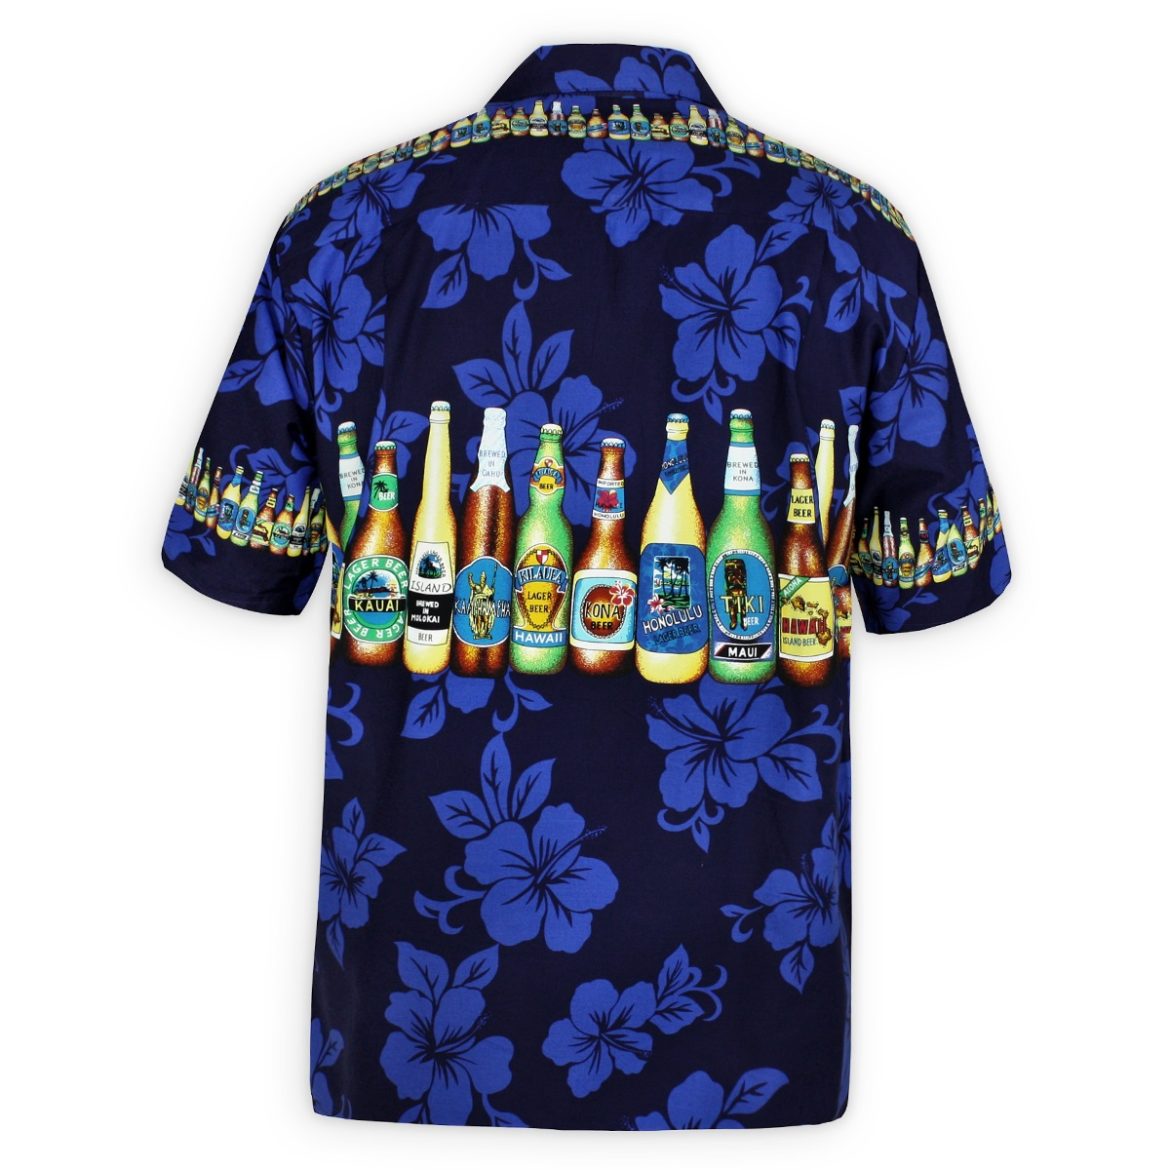 Mens Hawaiian Shirt - Bottoms Up - Navy Blue - Beer Bottle Print Shirt - Back View